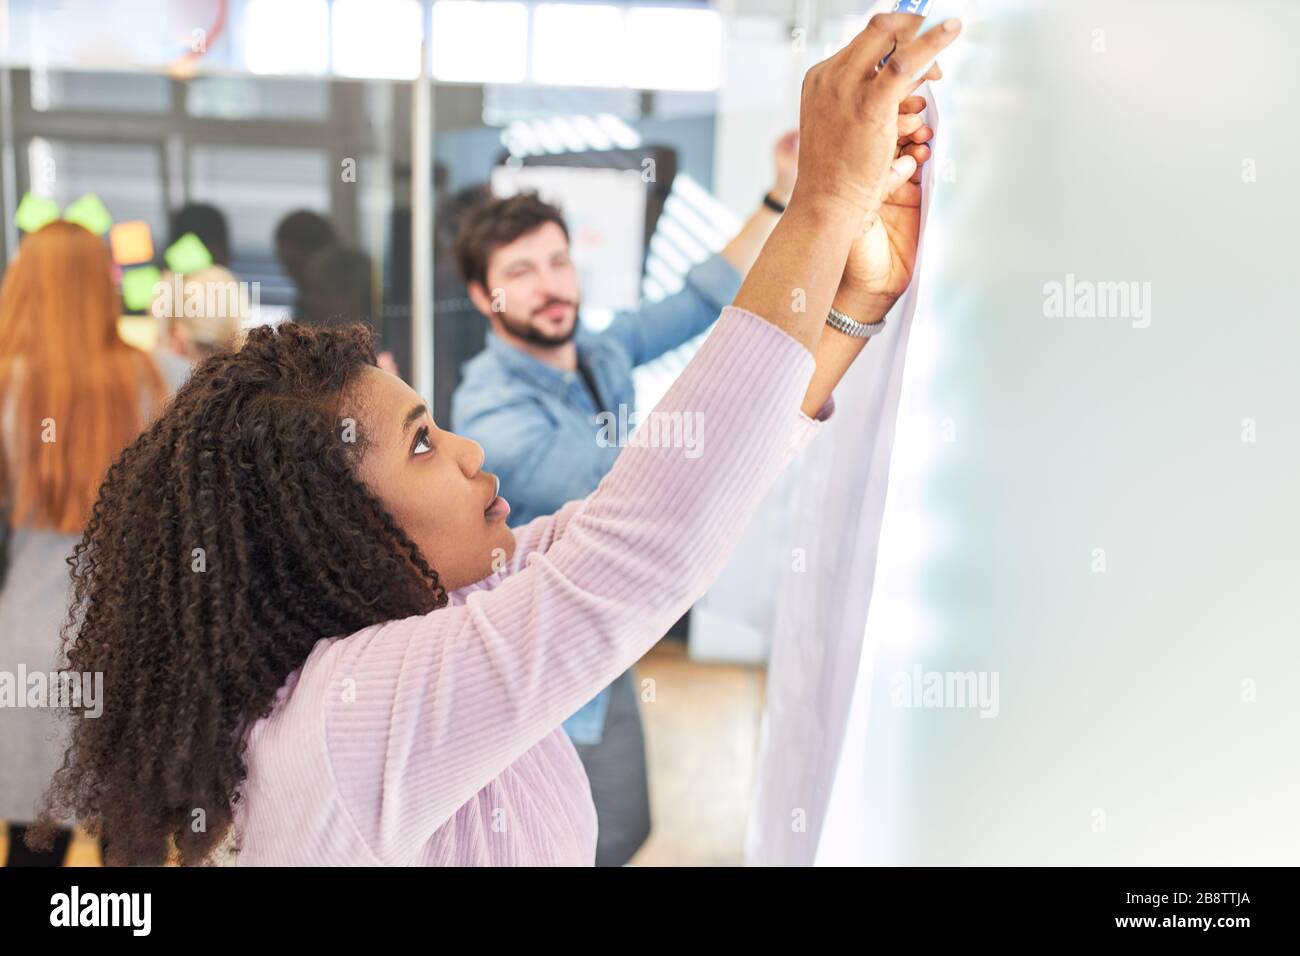 Zwei junge Geschäftsleute oder Studenten bauen im Büro eine Nachrichtentafel auf Stockfoto